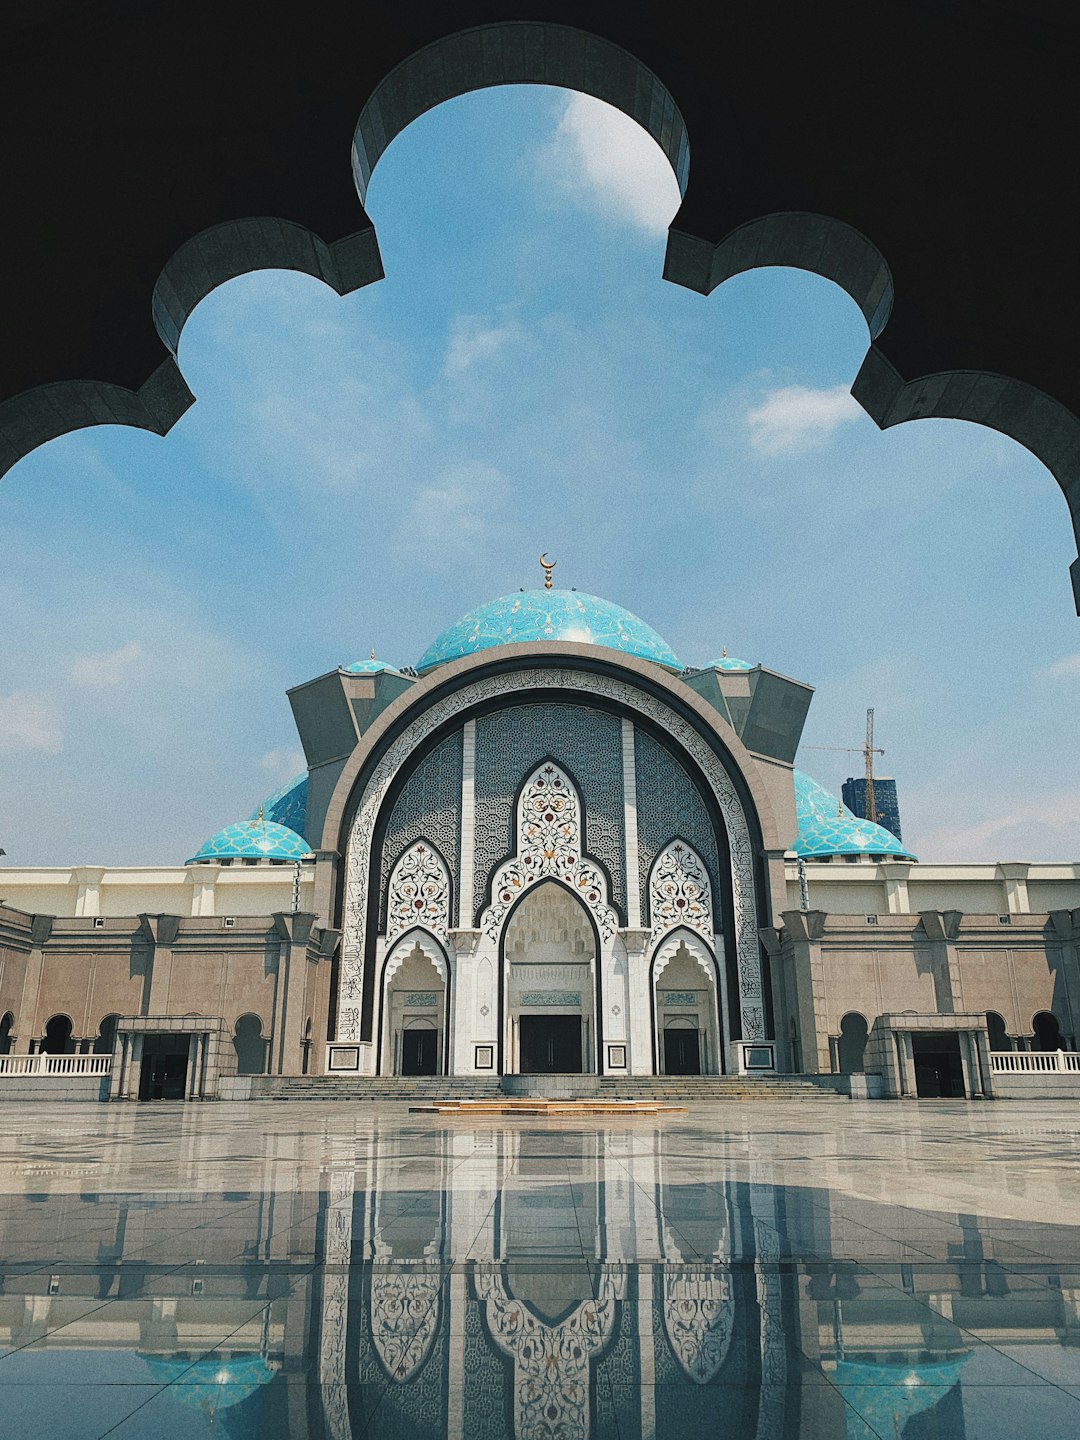 Landmark photo spot Masjid Wilayah Persekutuan Federal Territory of Kuala Lumpur